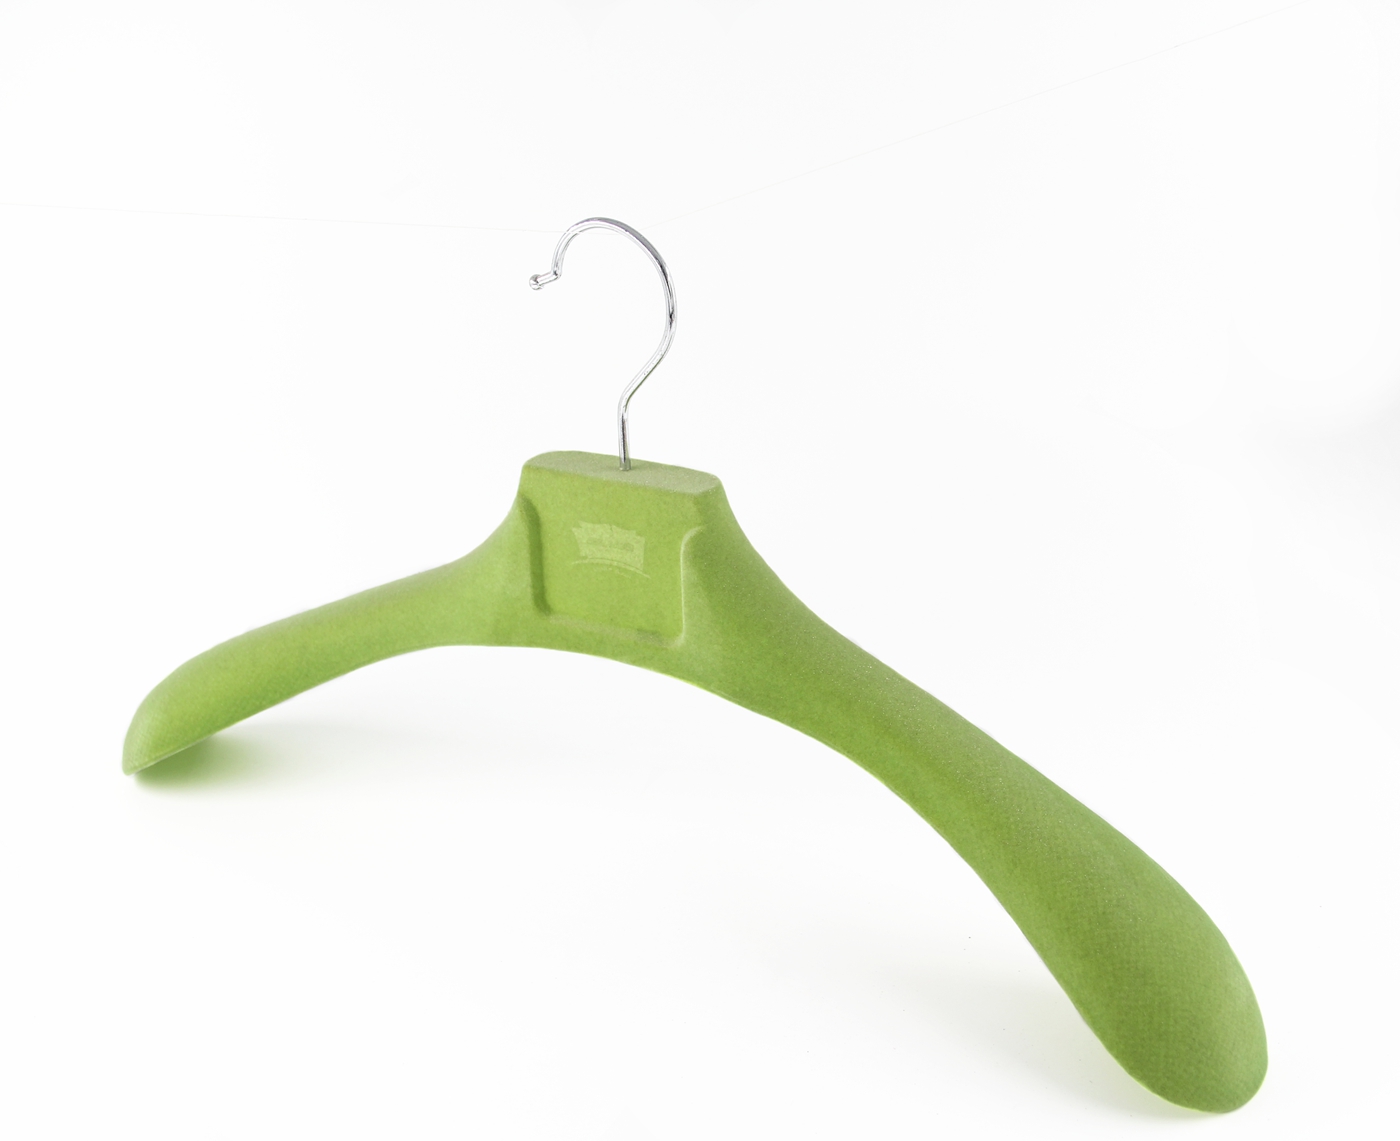 Grüner Samt-Kleiderbügel zum Anpassen des Logo-Kunststoff-Samt-Kleiderbügels für die Marke